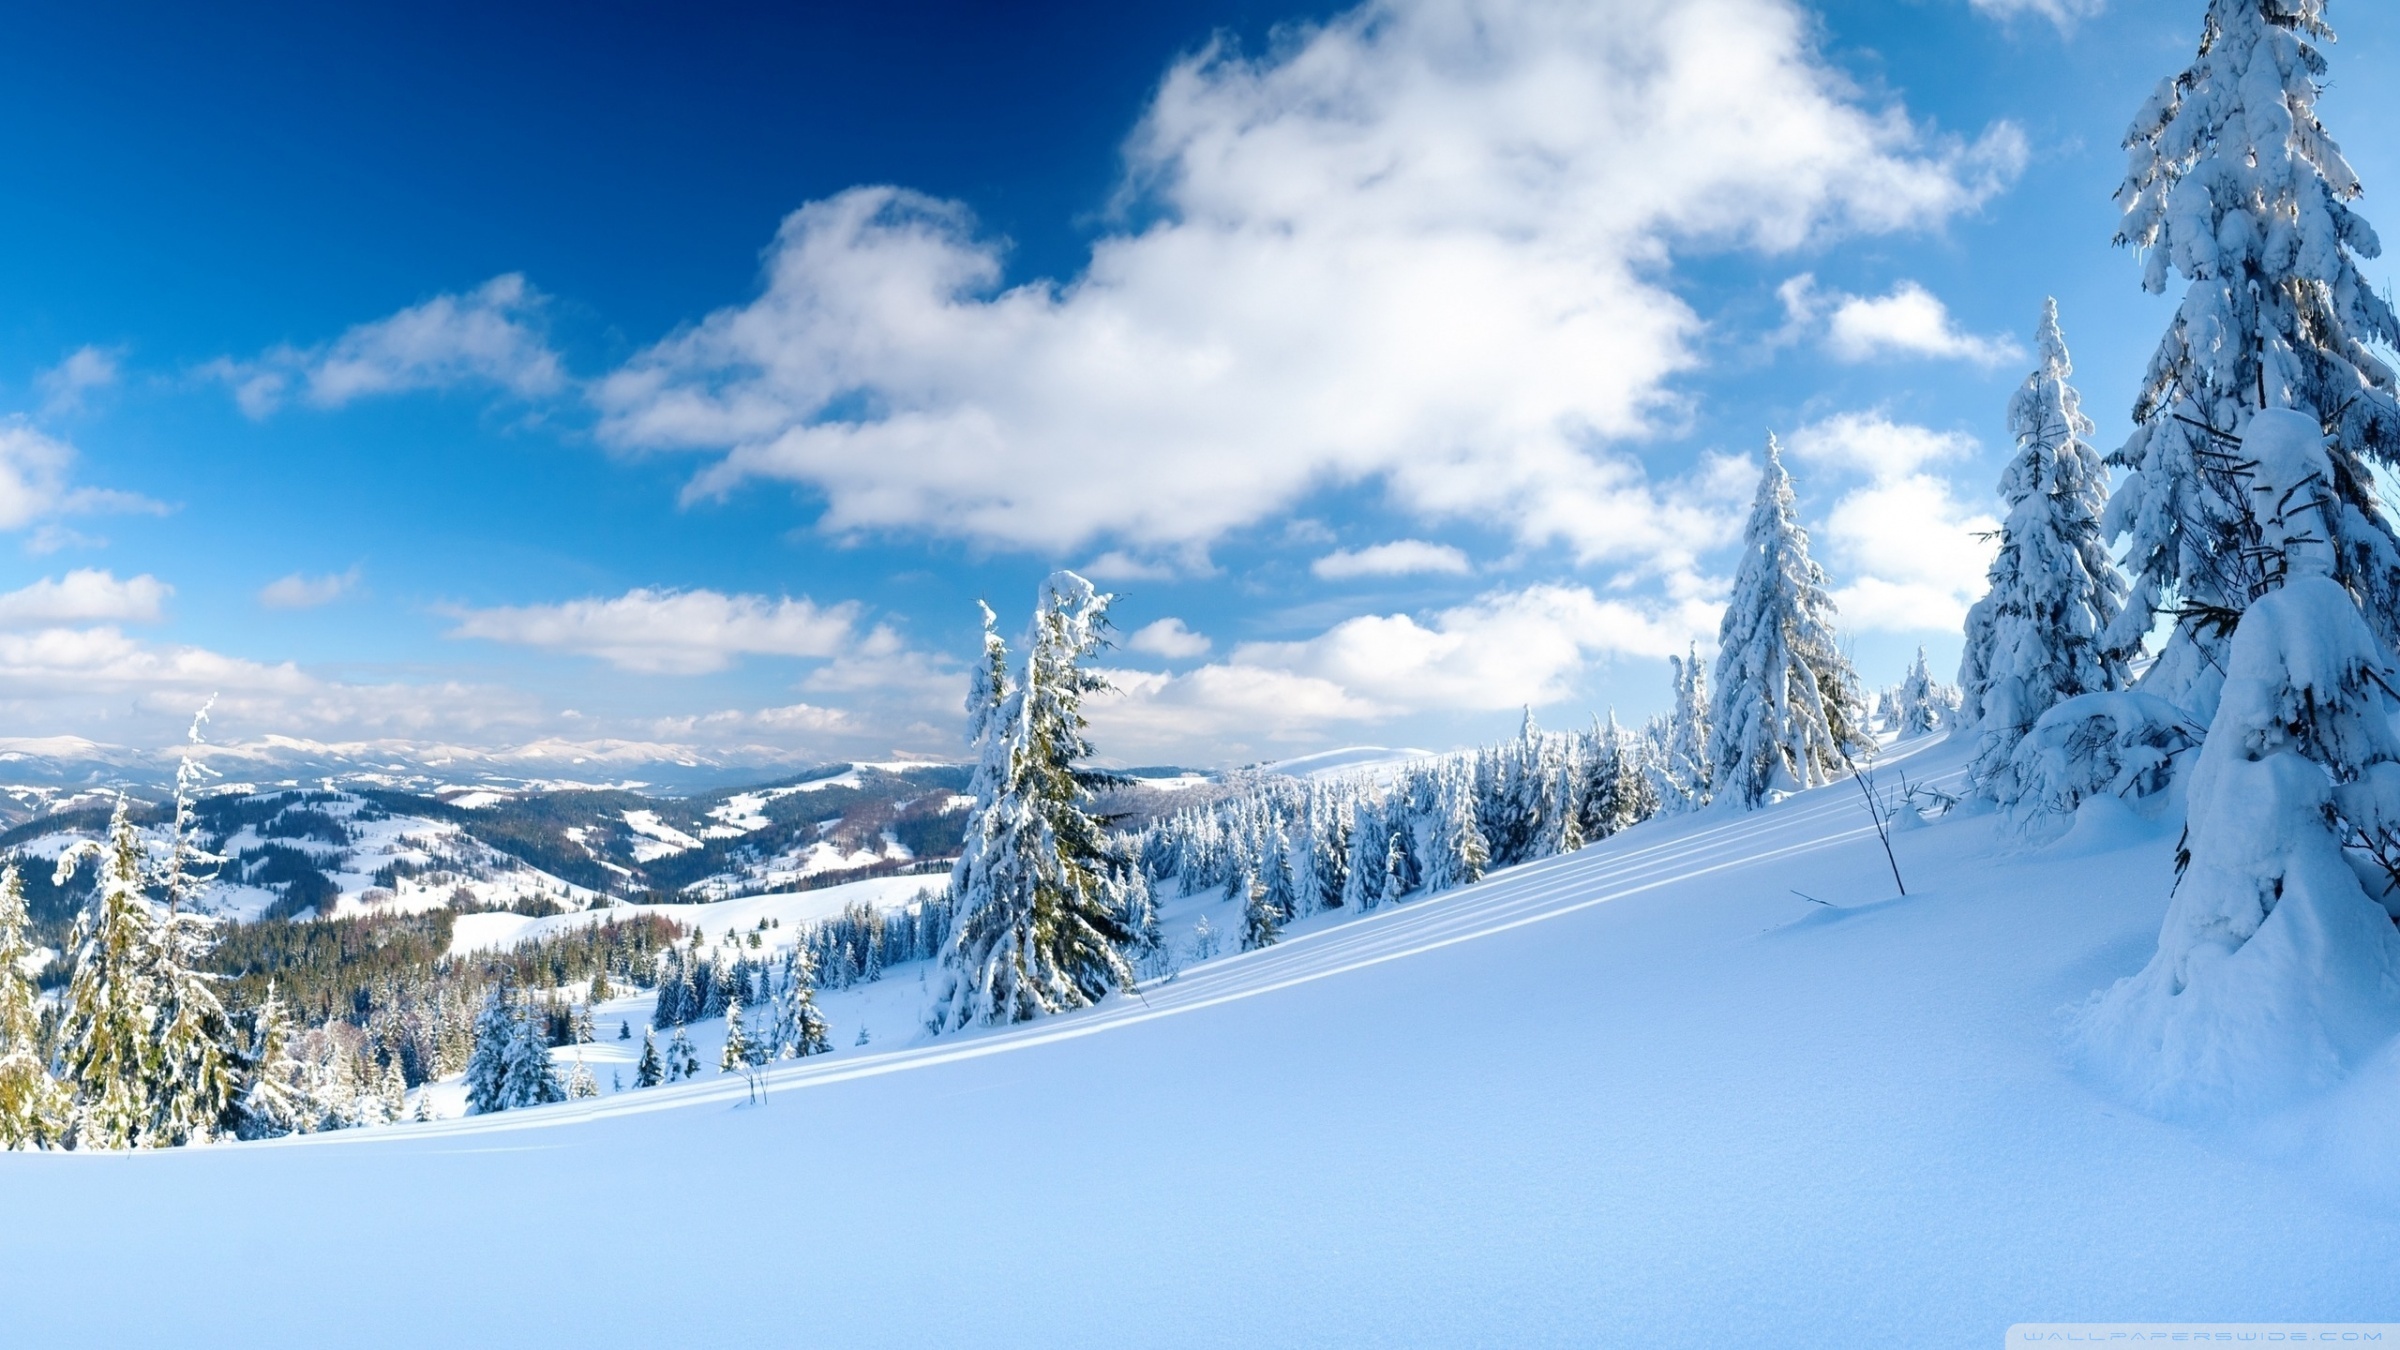 Скачать обои бесплатно Снег, Облака, Небо, Пейзаж, Горы, Зима картинка на рабочий стол ПК